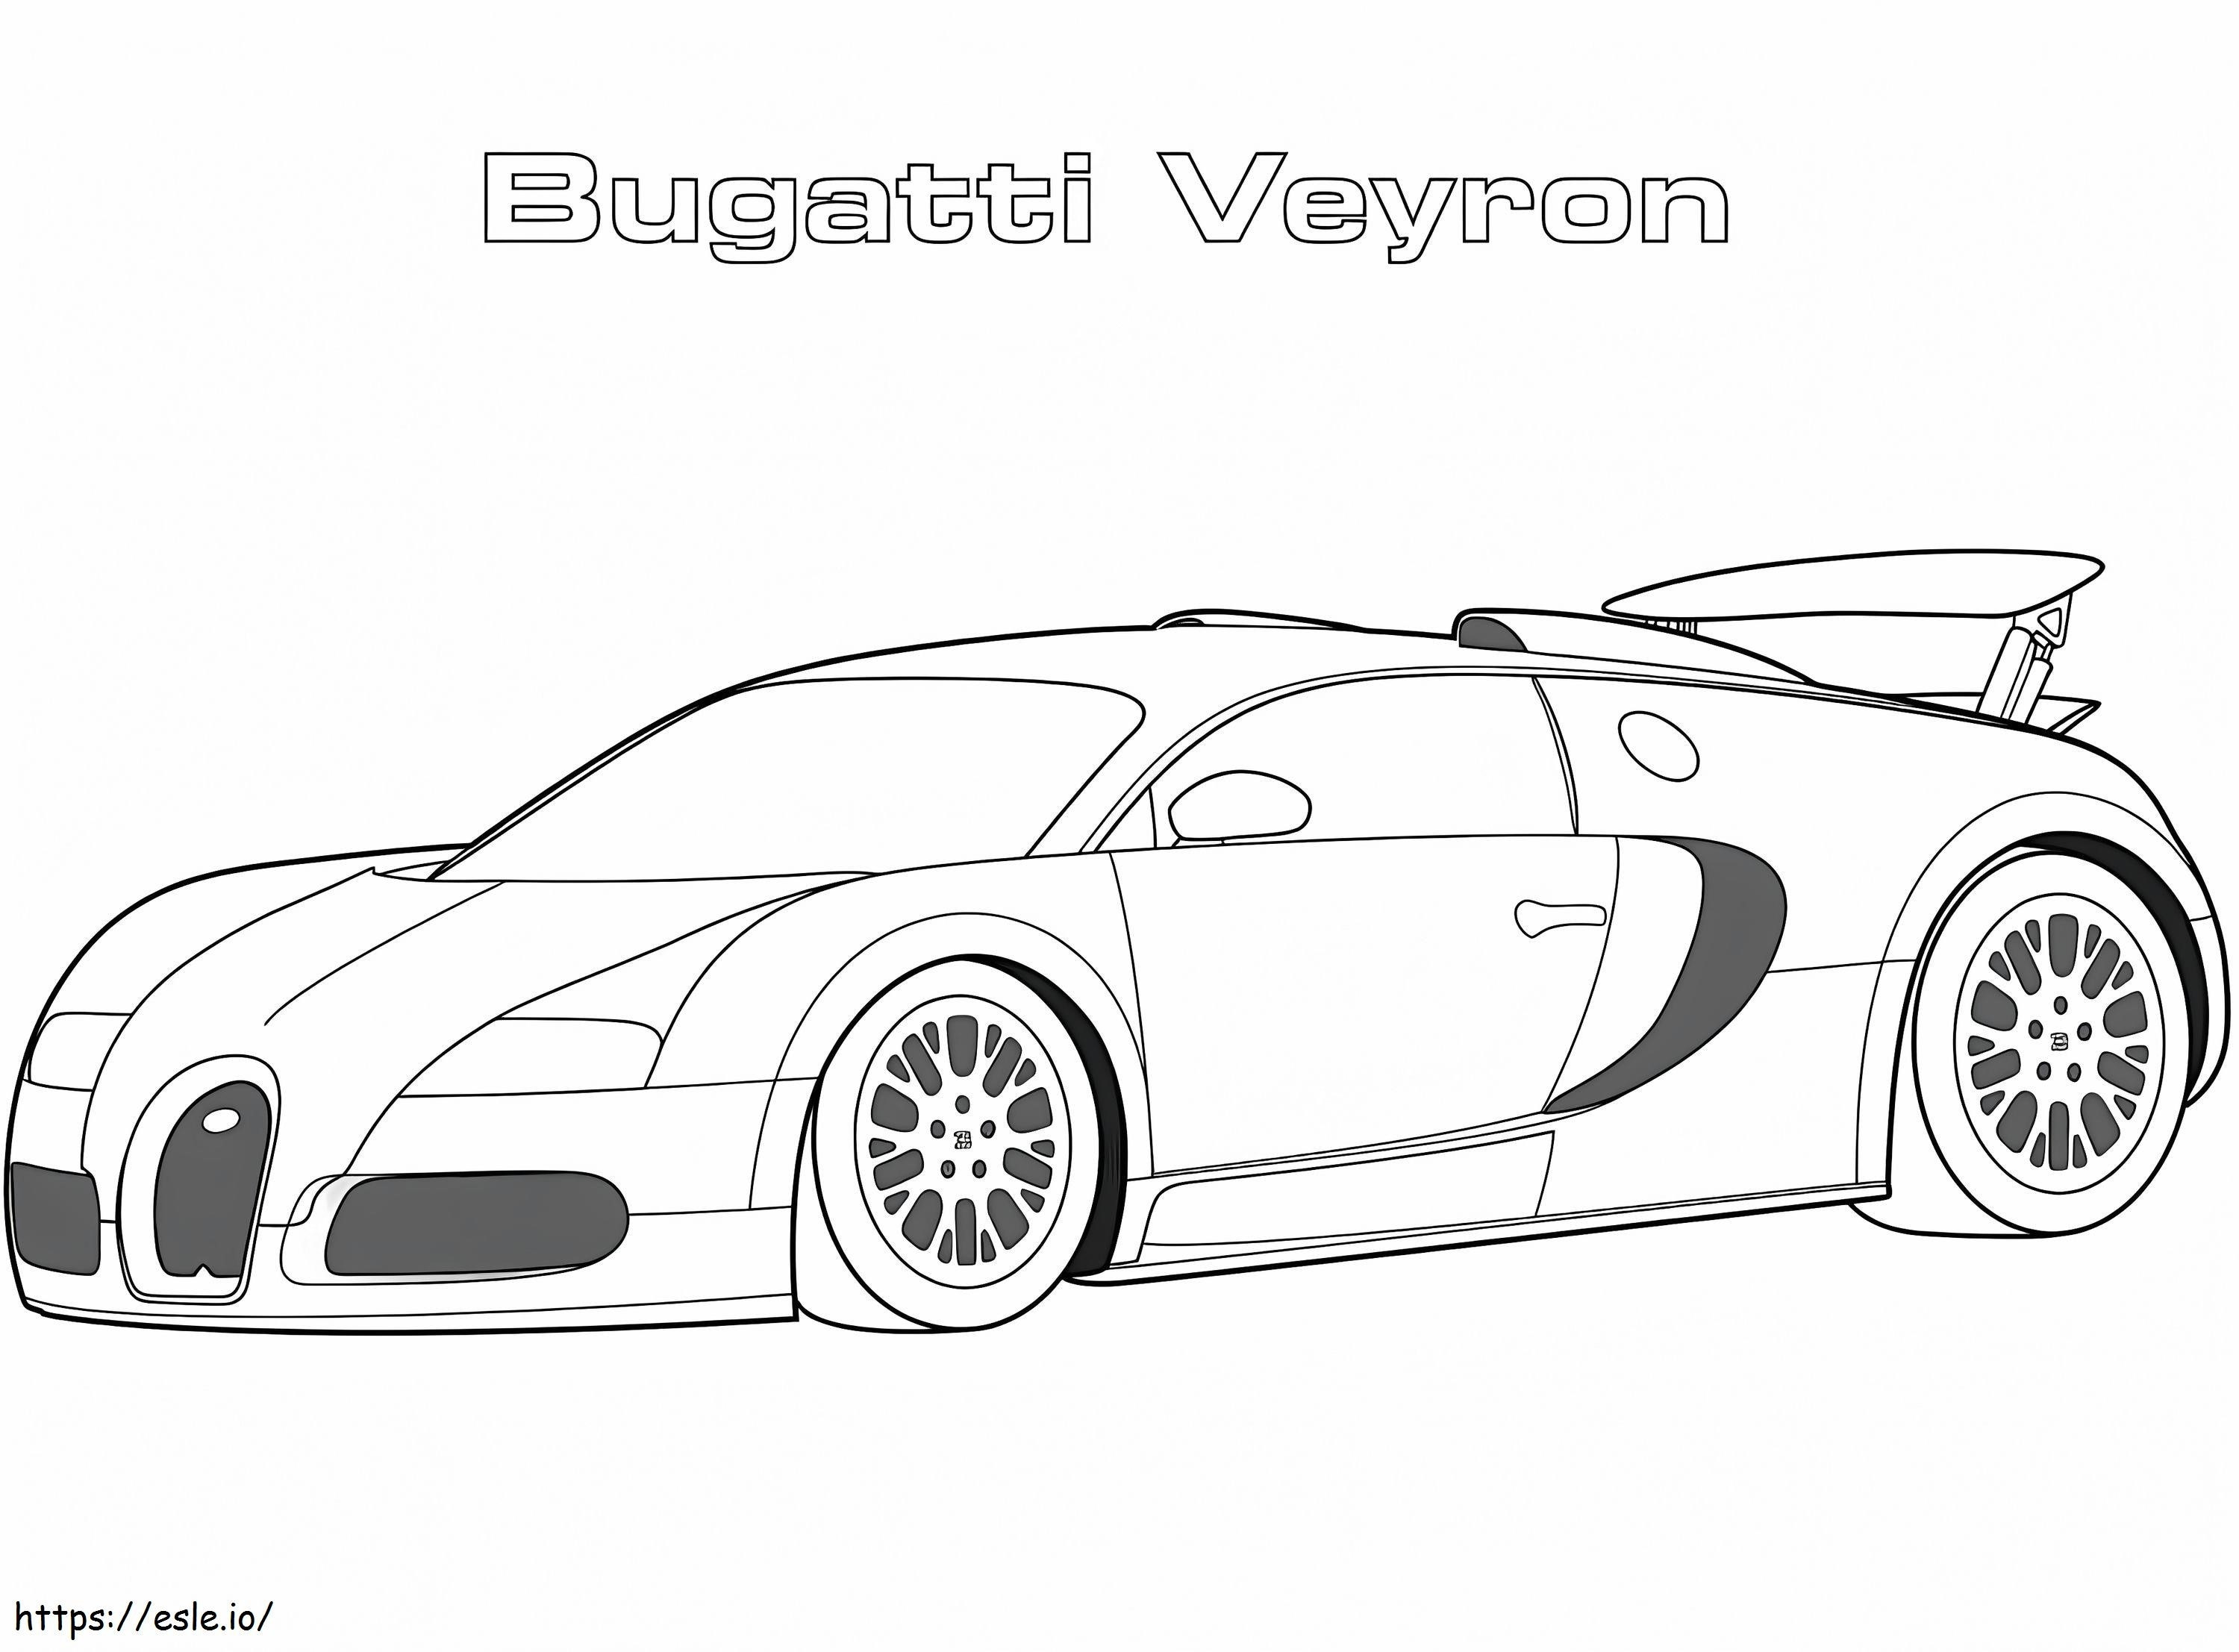 Bugatti Veyron uit 2005 kleurplaat kleurplaat